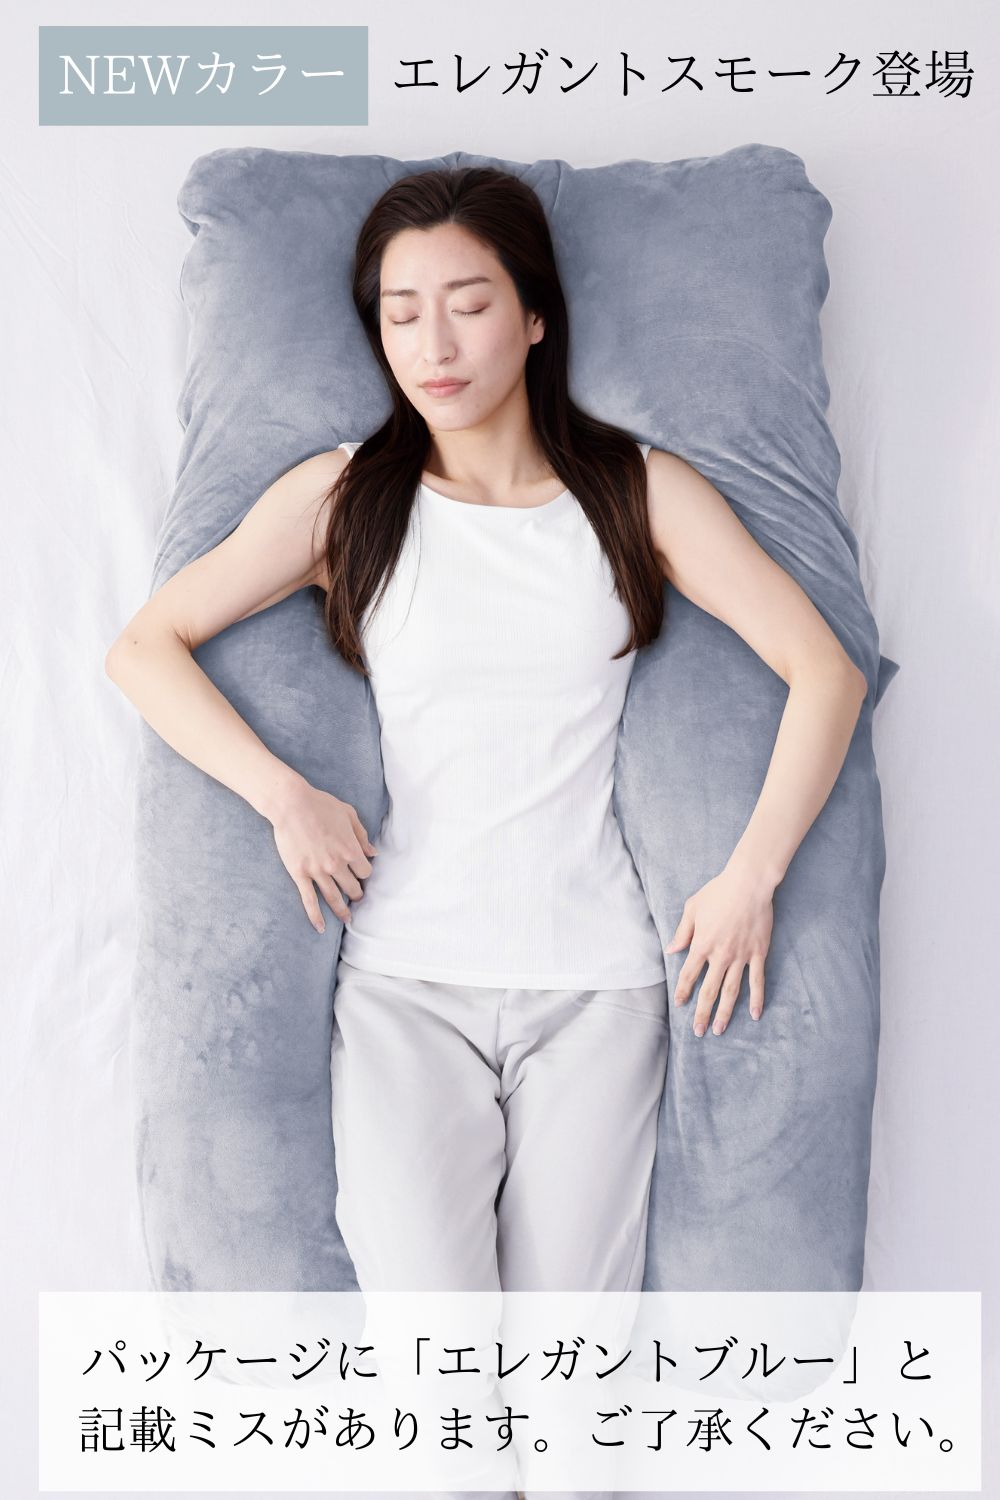 安心の正規品 ハグモッチ 医師の92%が推奨 枕 抱き枕 安眠 低反発 まくら 妊婦 妊娠中 いびき...